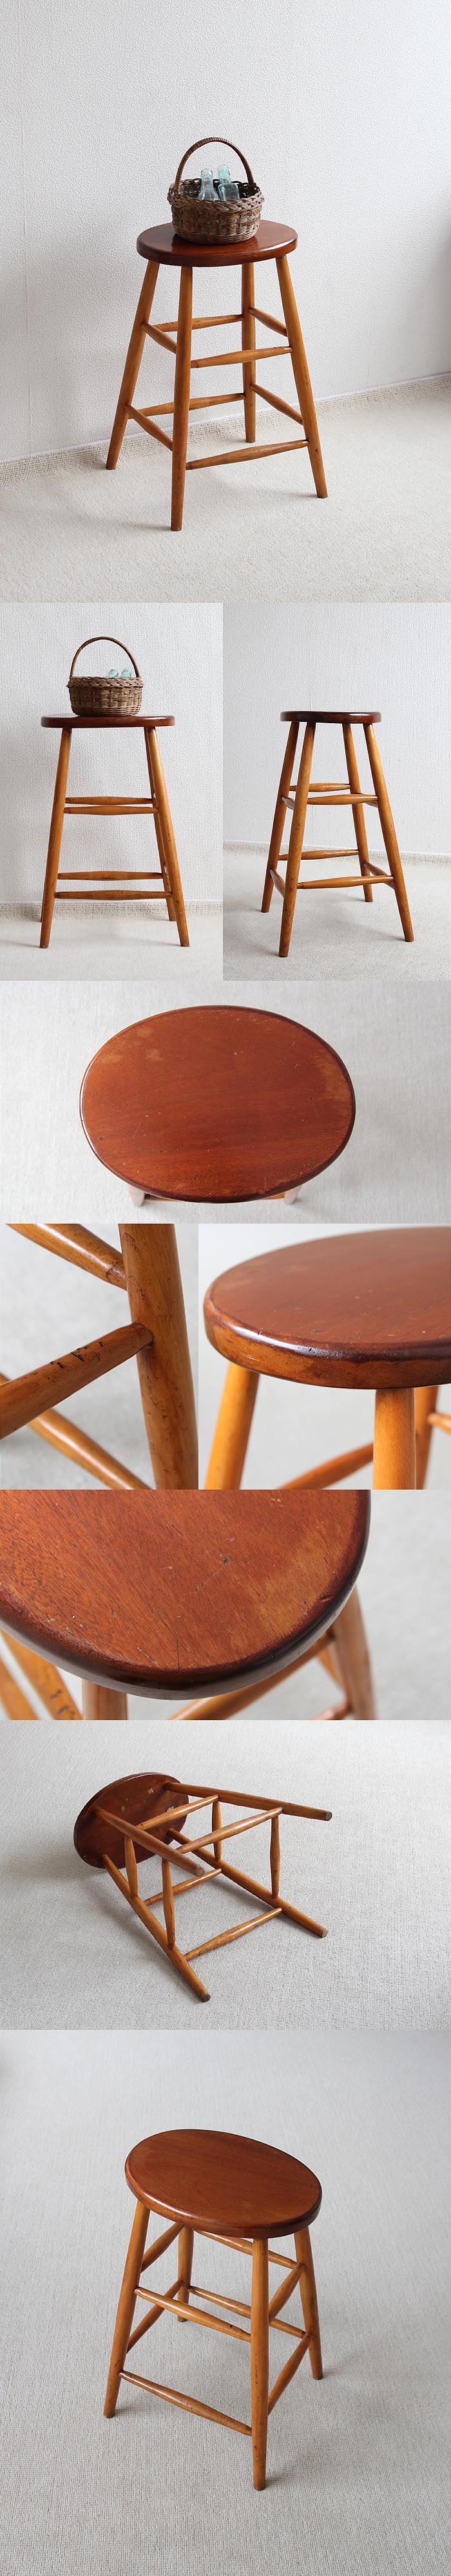 イギリス ヴィンテージ ハイスツール 木製椅子 カントリー 花台 アンティーク 家具 「一枚板座面」V-683